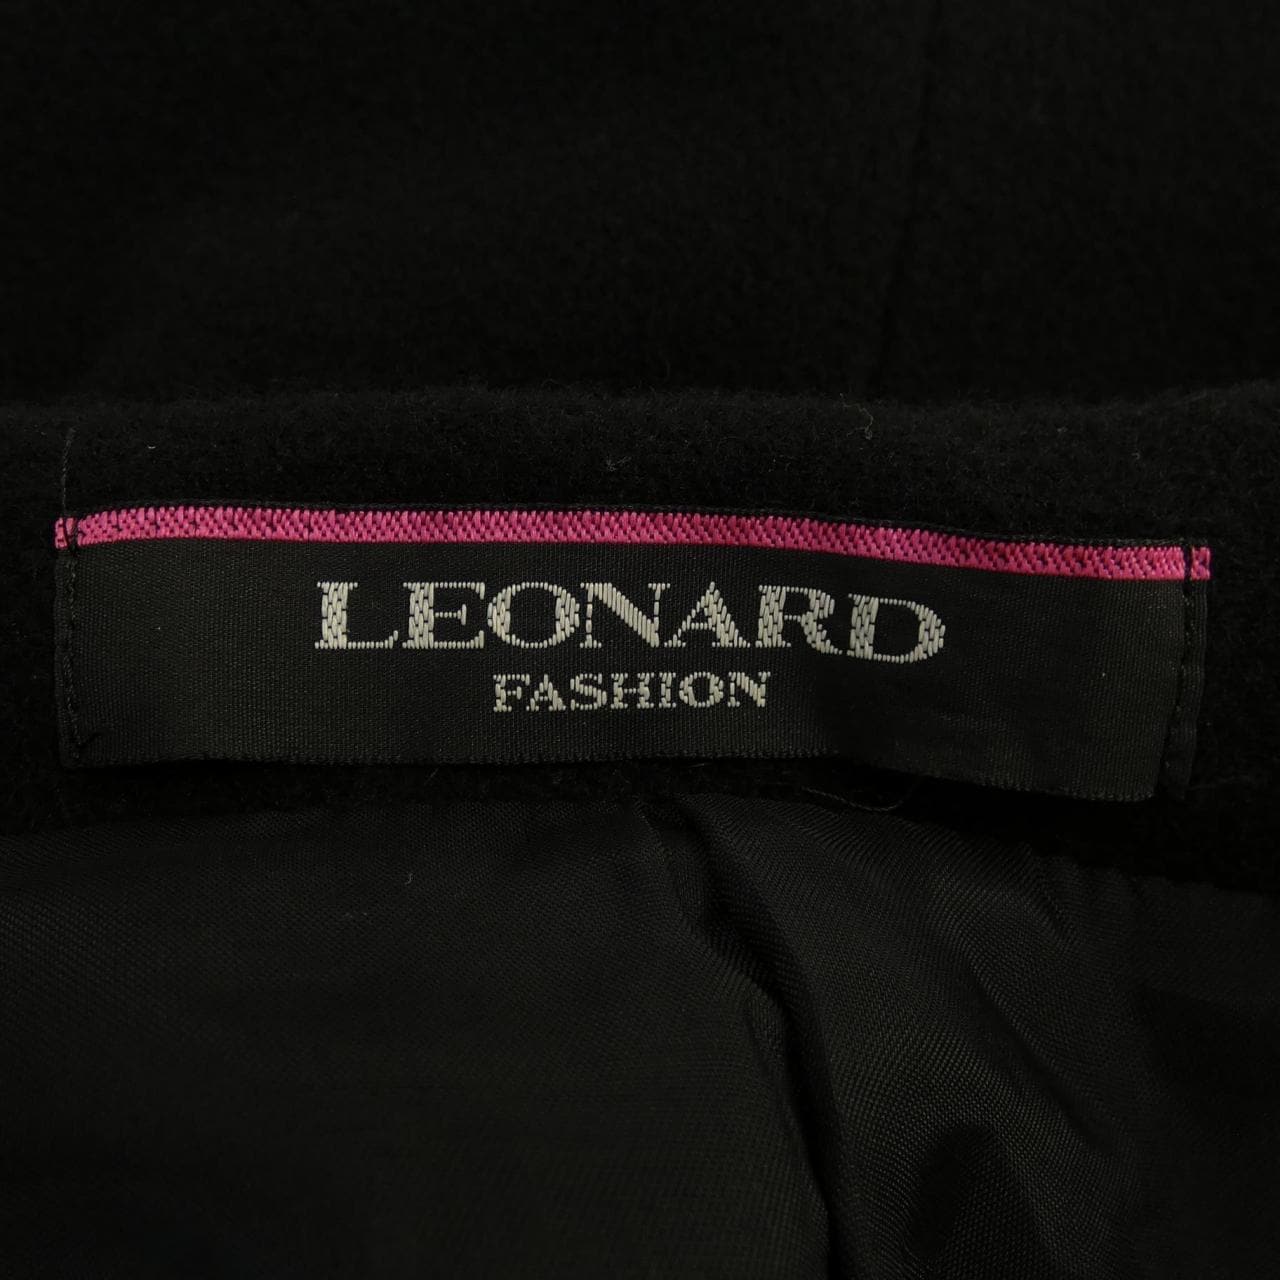 萊昂納多時尚LEONARD FASHION夾克